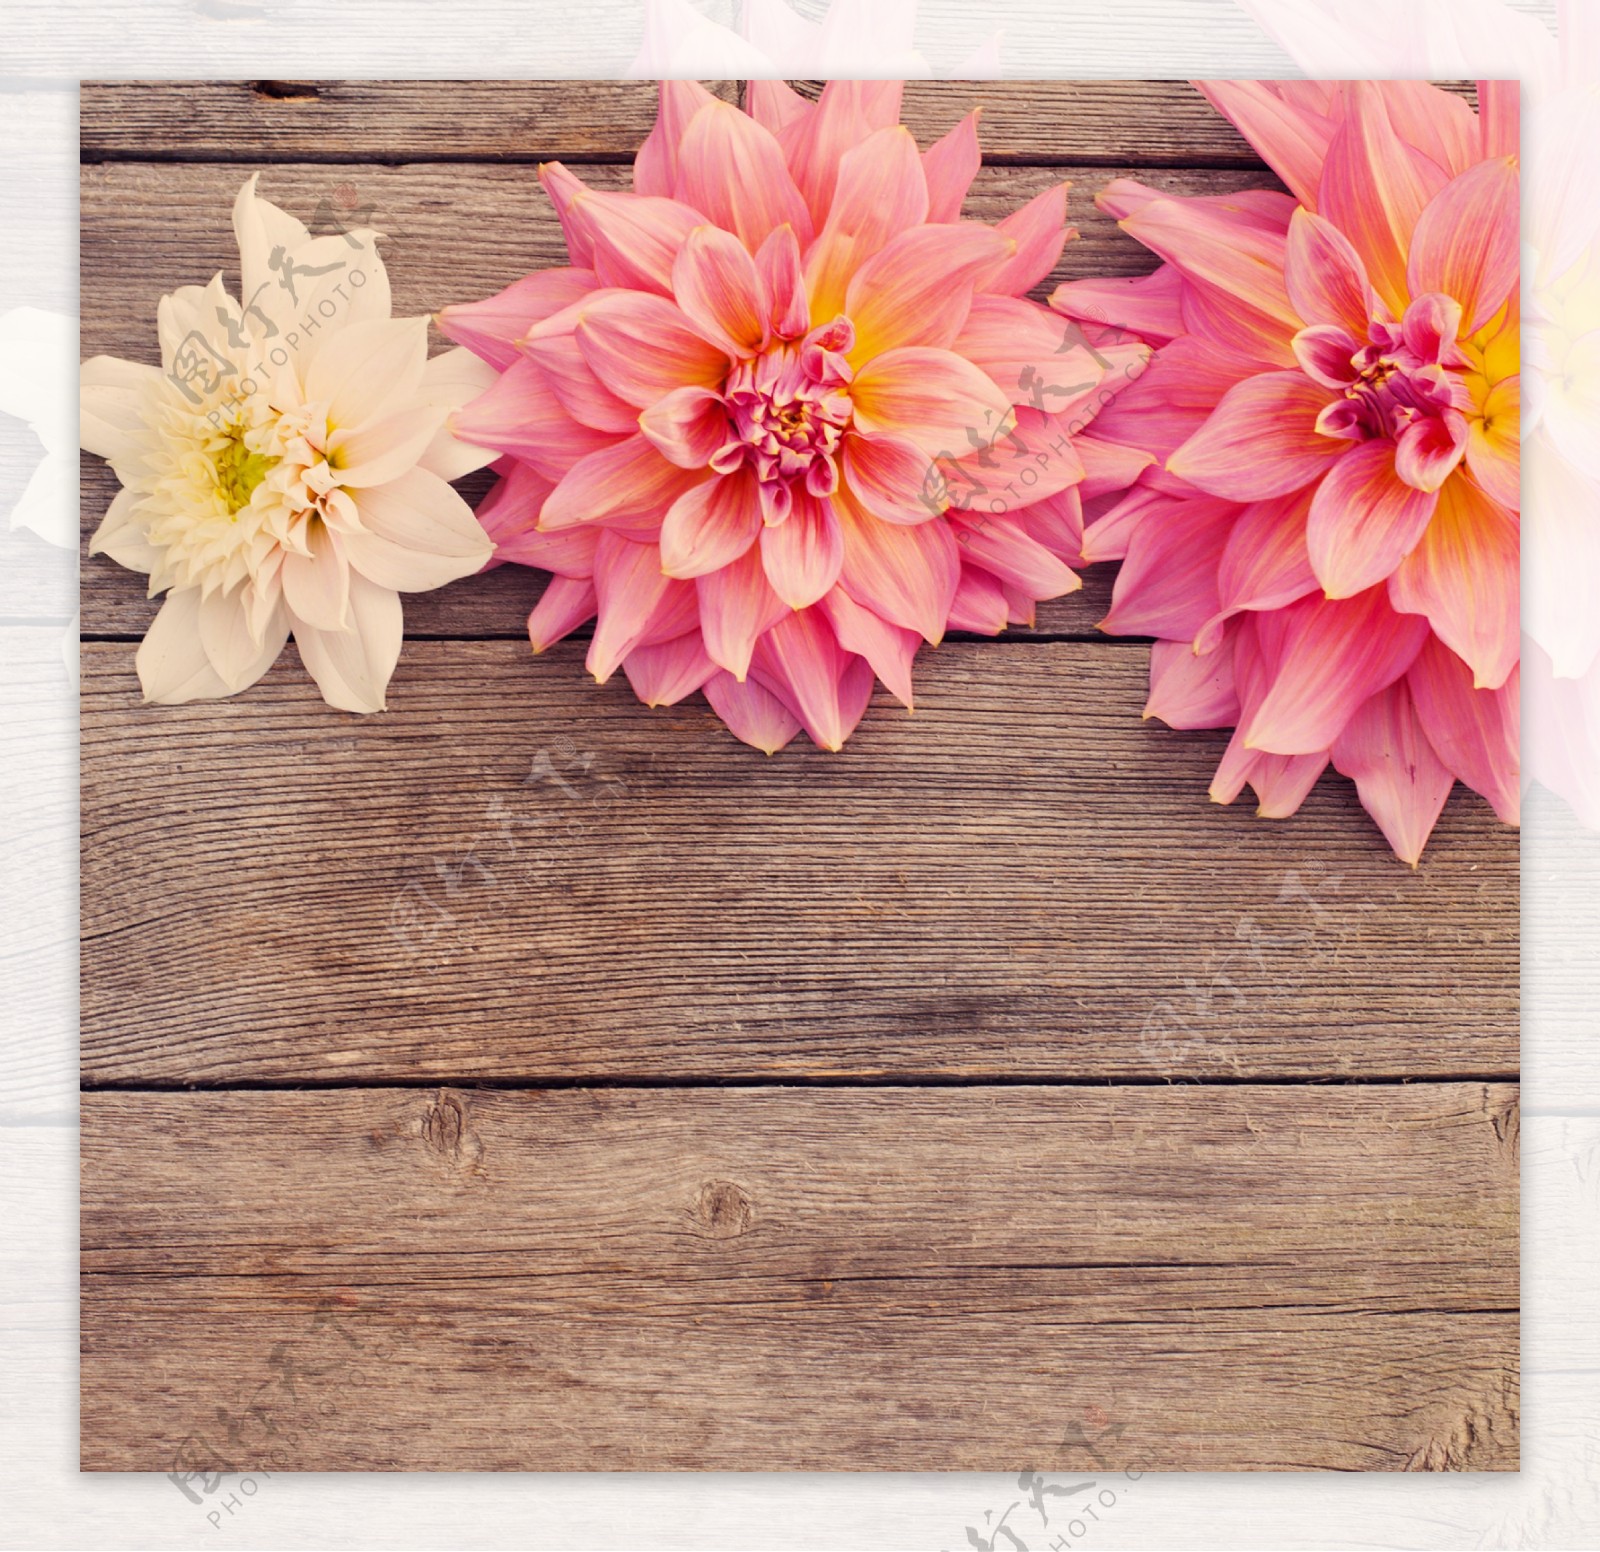 木板上的粉菊花